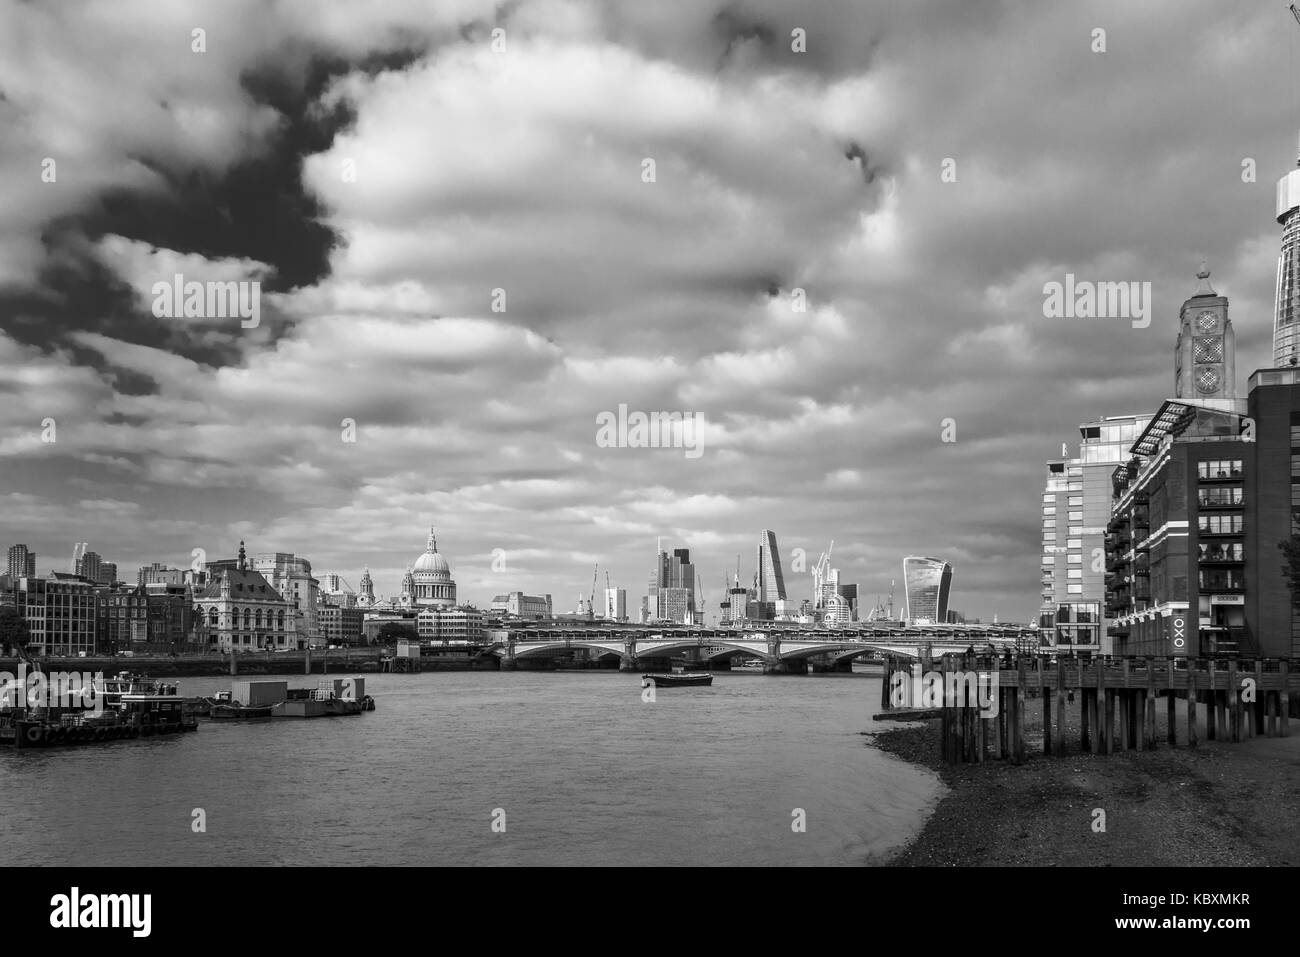 Panoramaaussicht, Stadt London Financial District Skyline, Blackfriars Bridge, OXO Tower, St. Paul's Cathedral, moderne Wolkenkratzer ikonischen hohen Gebäuden Stockfoto